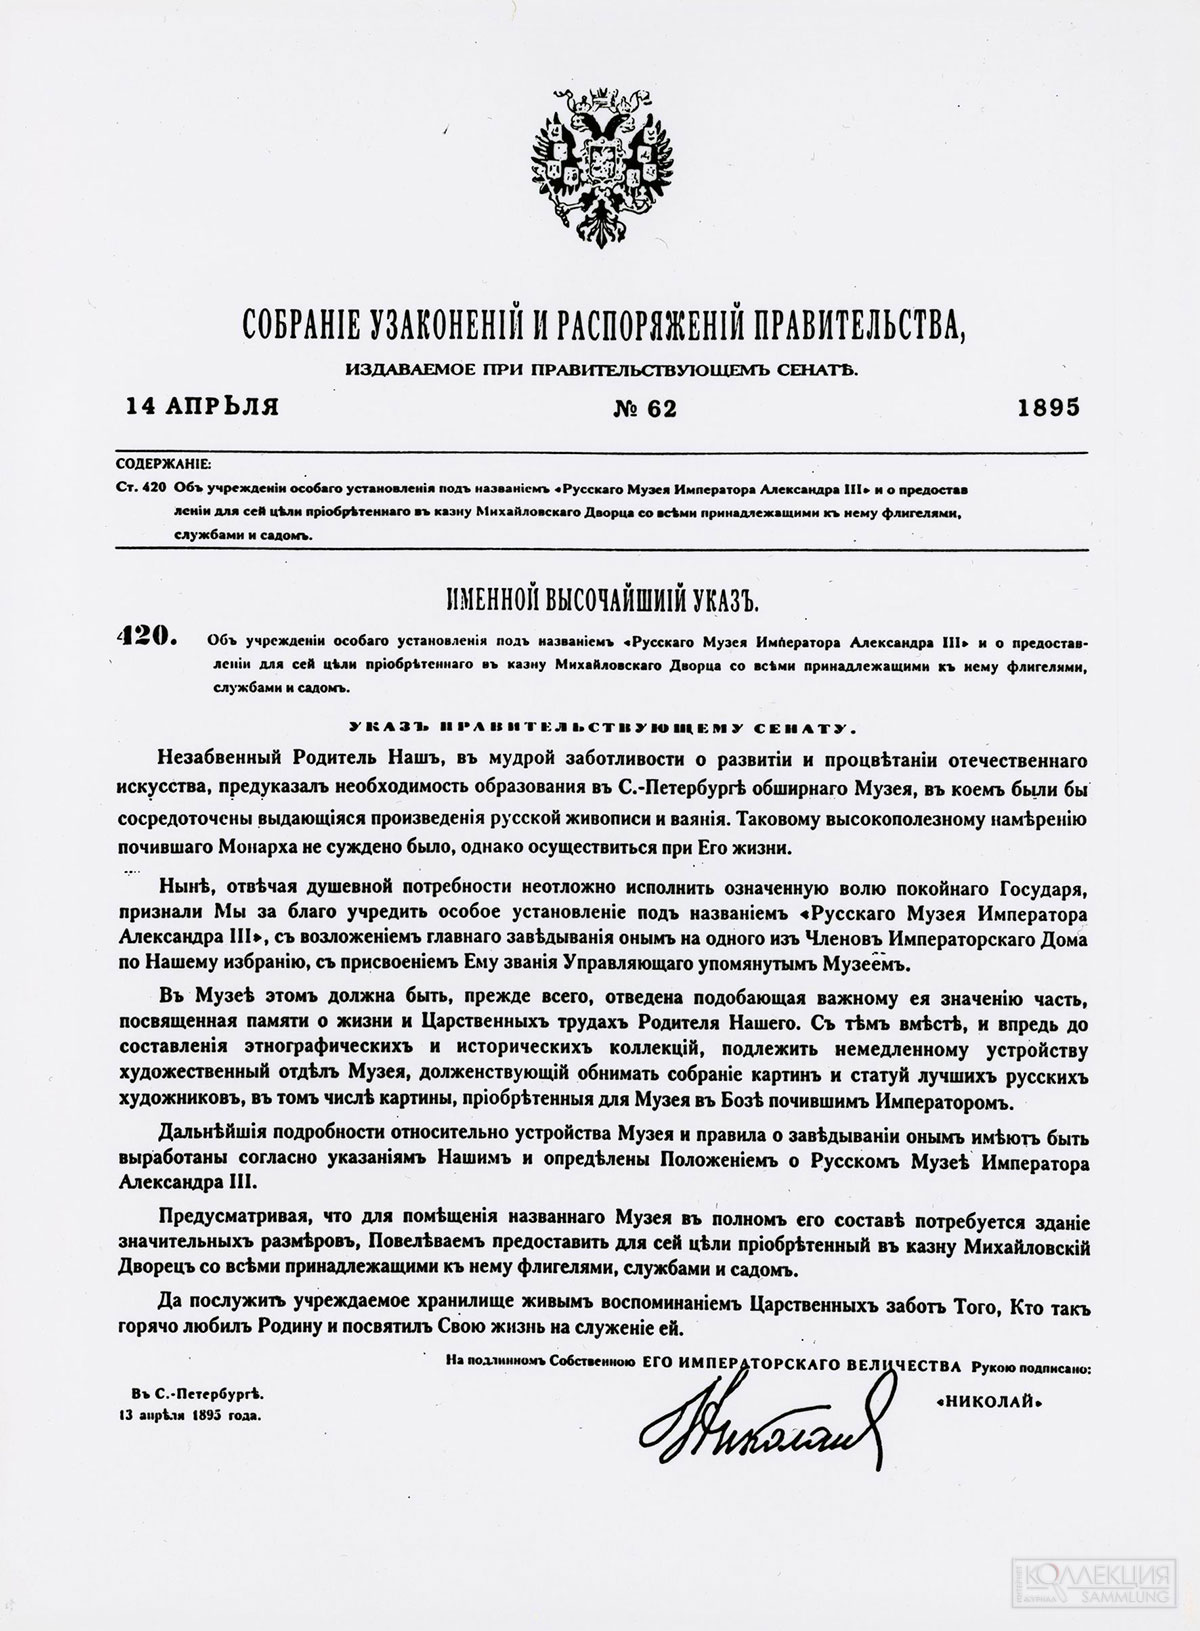 Именной Высочайший Указ об учреждении Русского музея. 13 апреля 1895 года